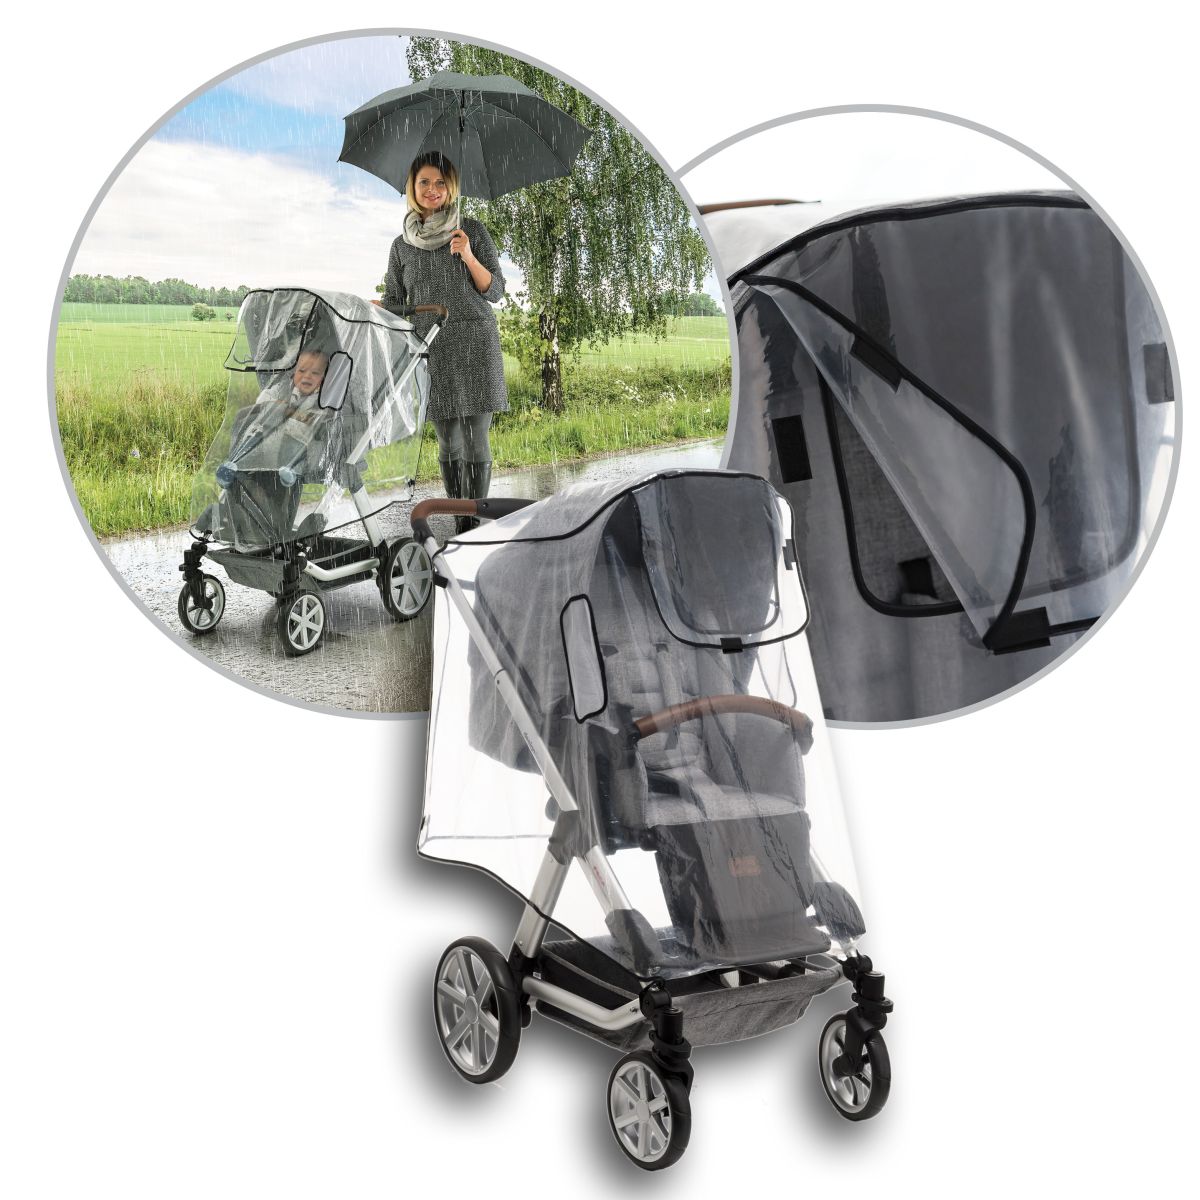 Regenschutz für Babyschalen universal - Princess Kinderwagen